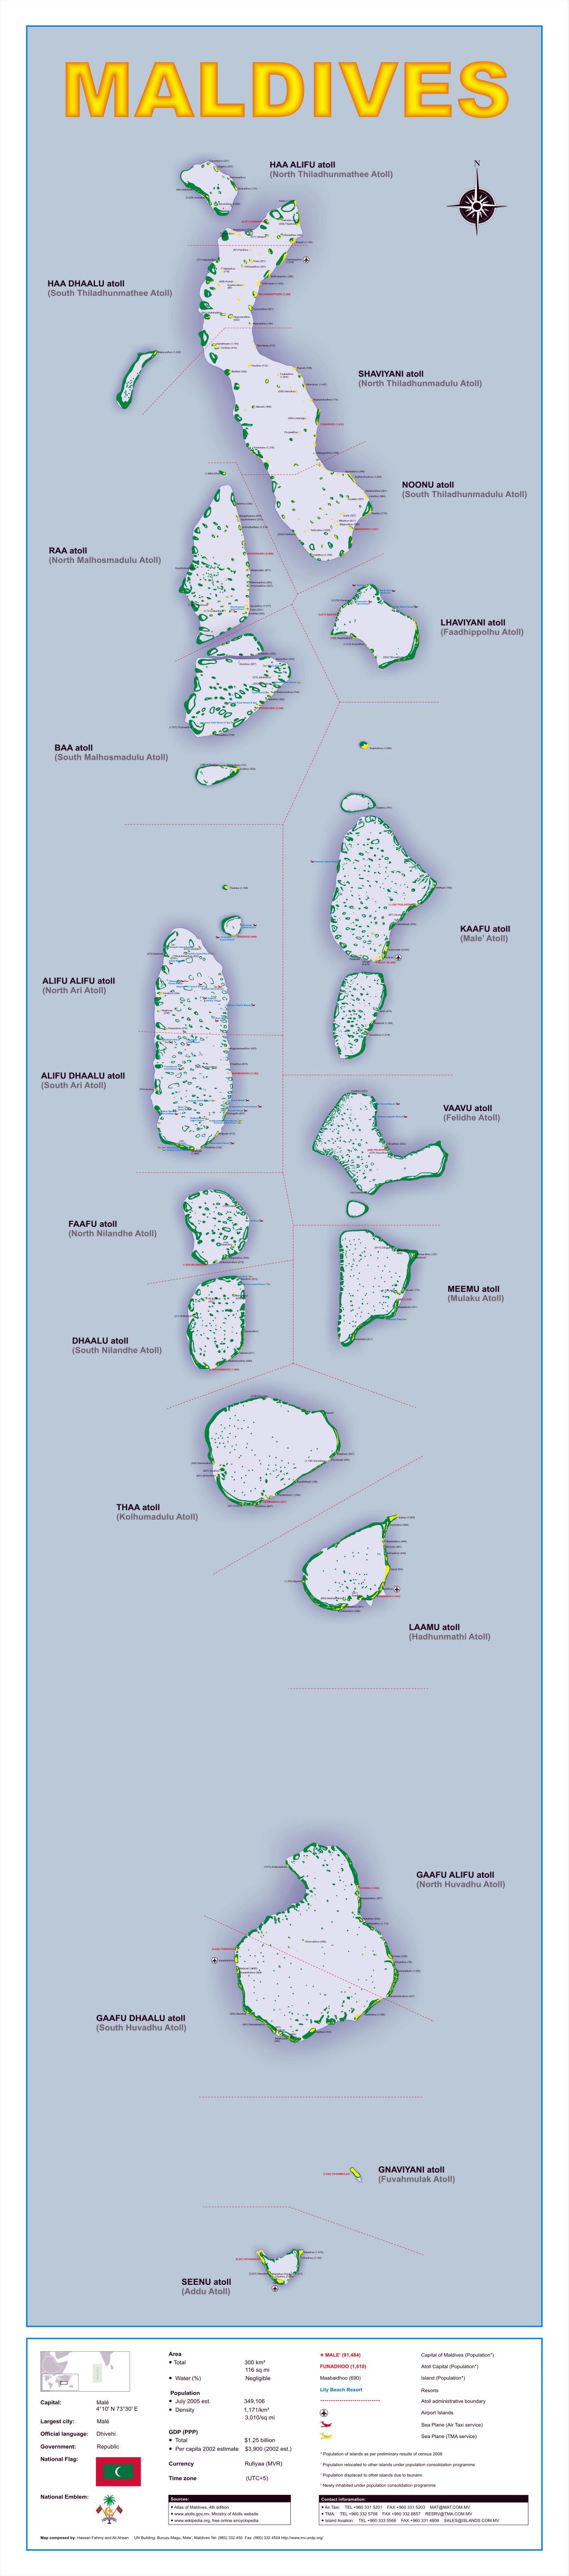 Большая детальная политическая и административная карта Мальдив